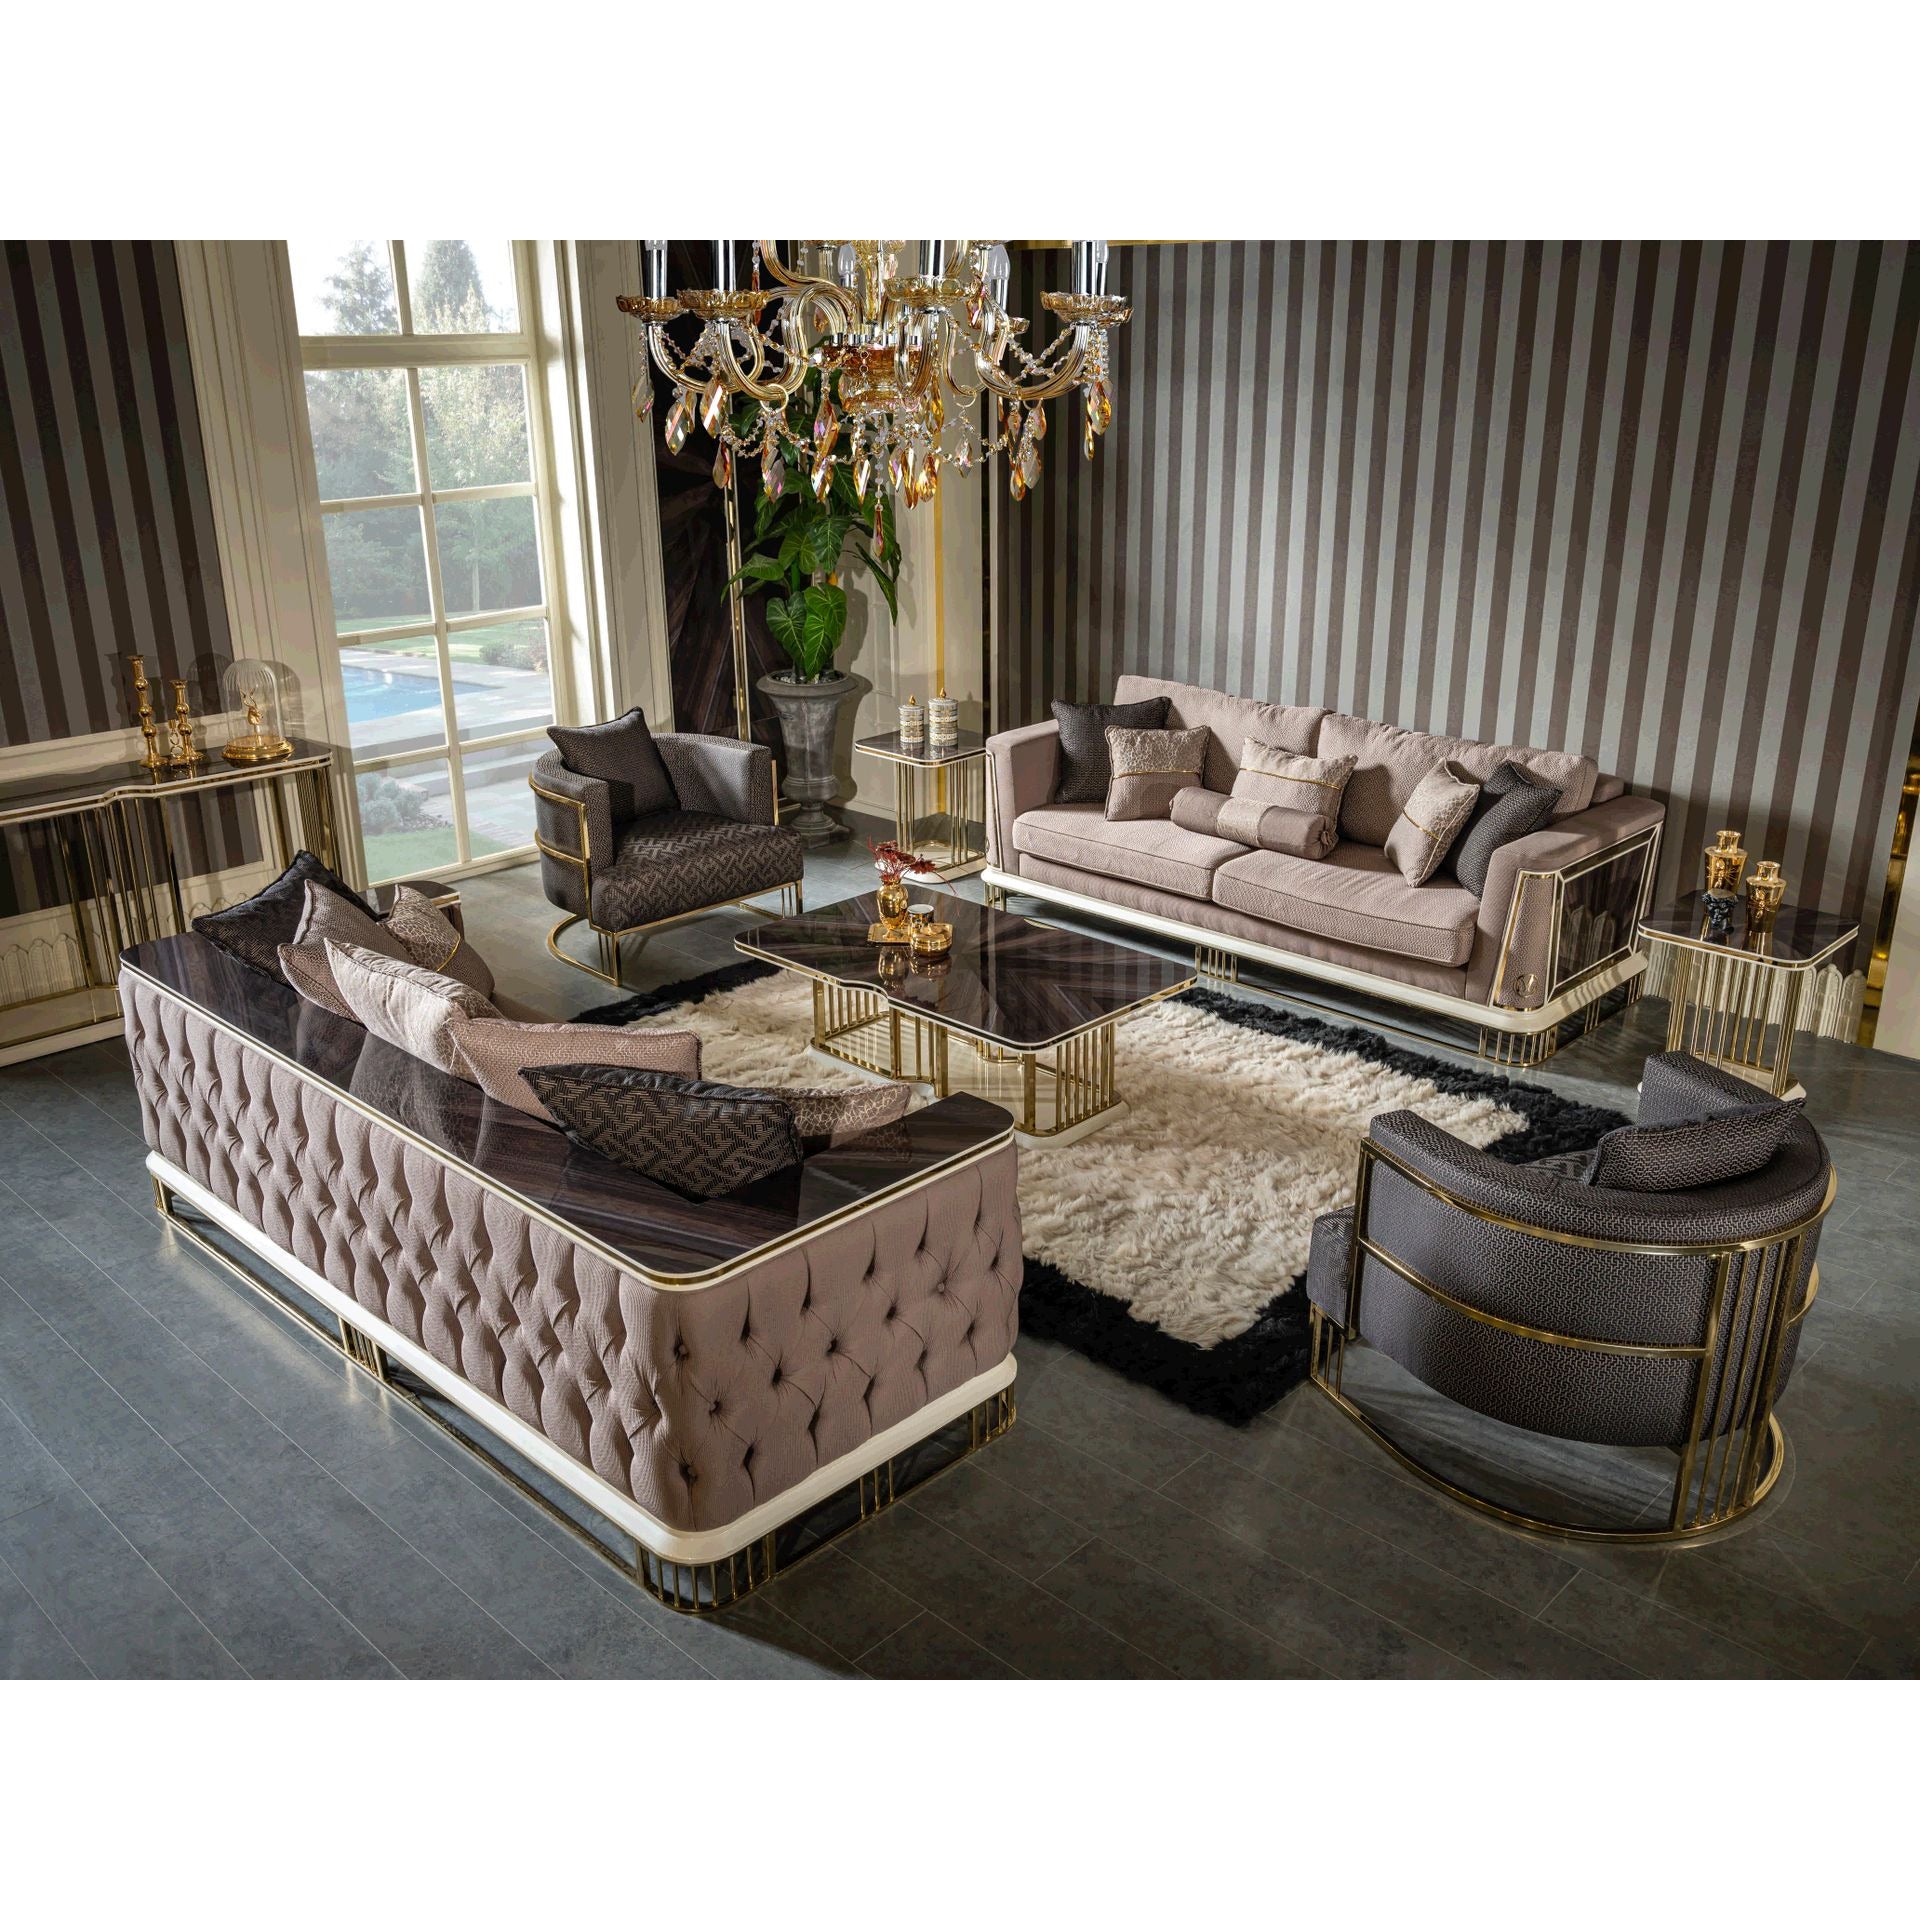 Bugatti Fåtölj - LINE Furniture Group